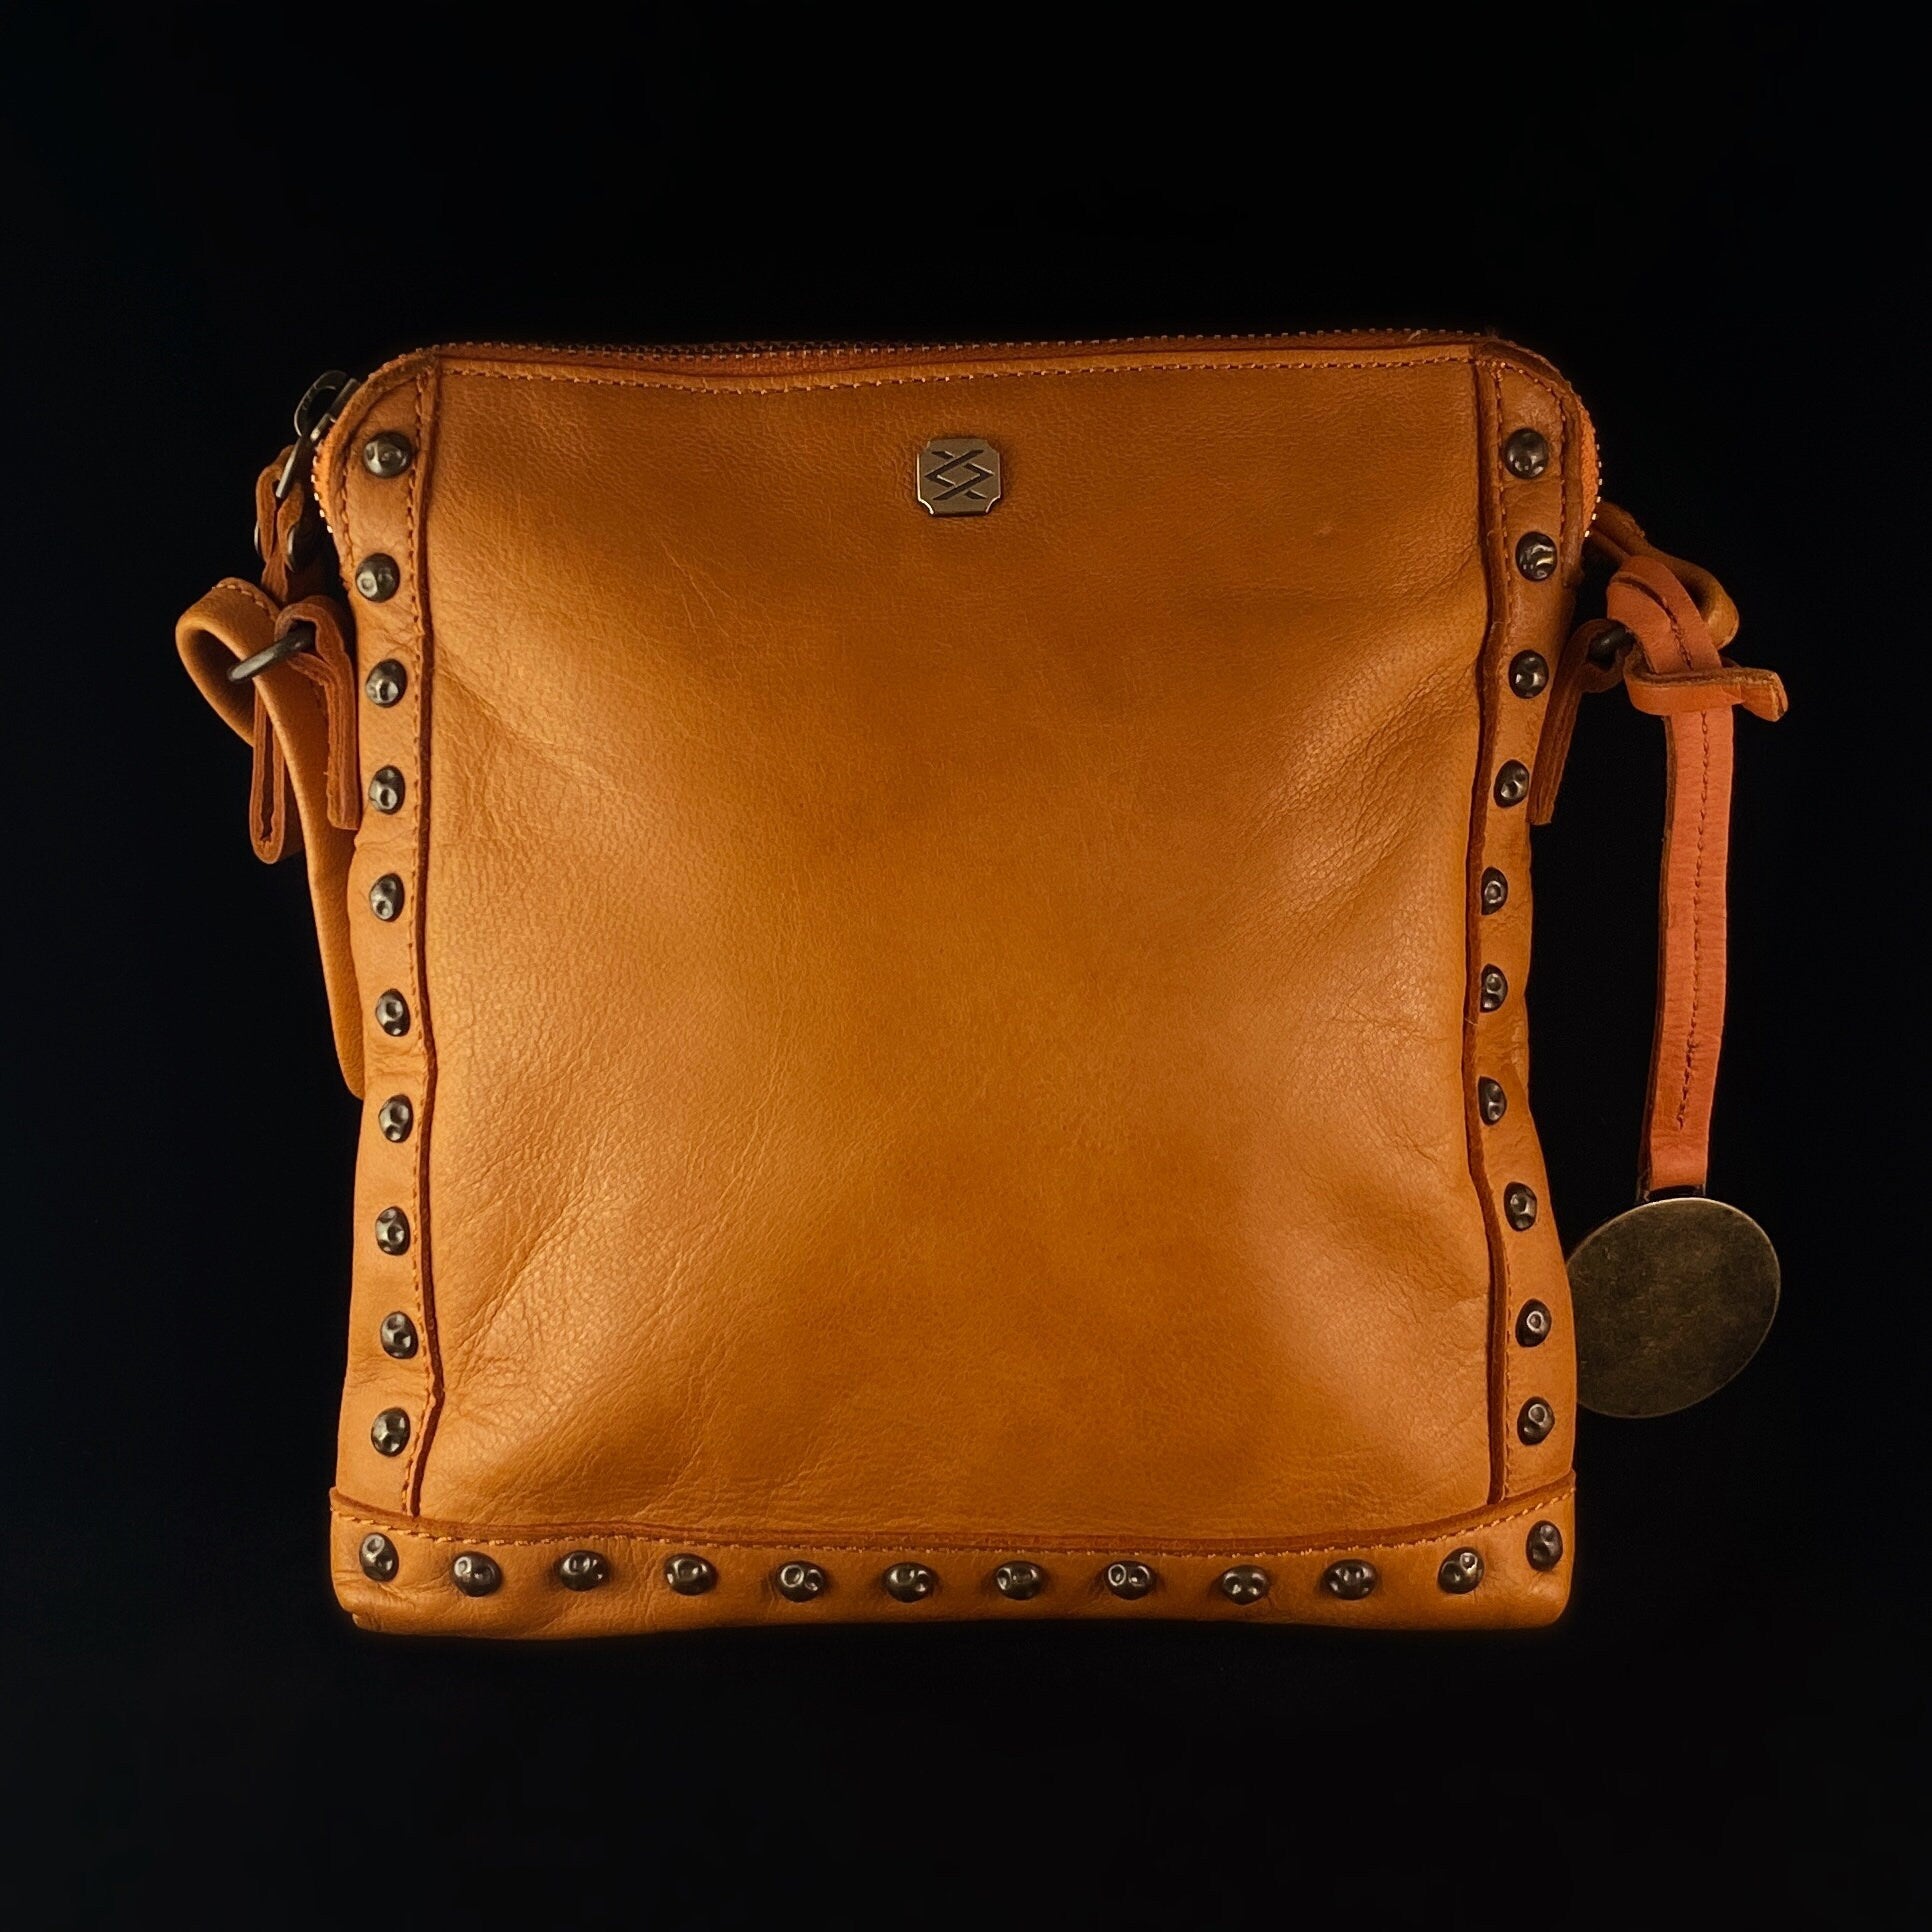 Genuine Italian Leather Handbag - Orange, Stud Detail